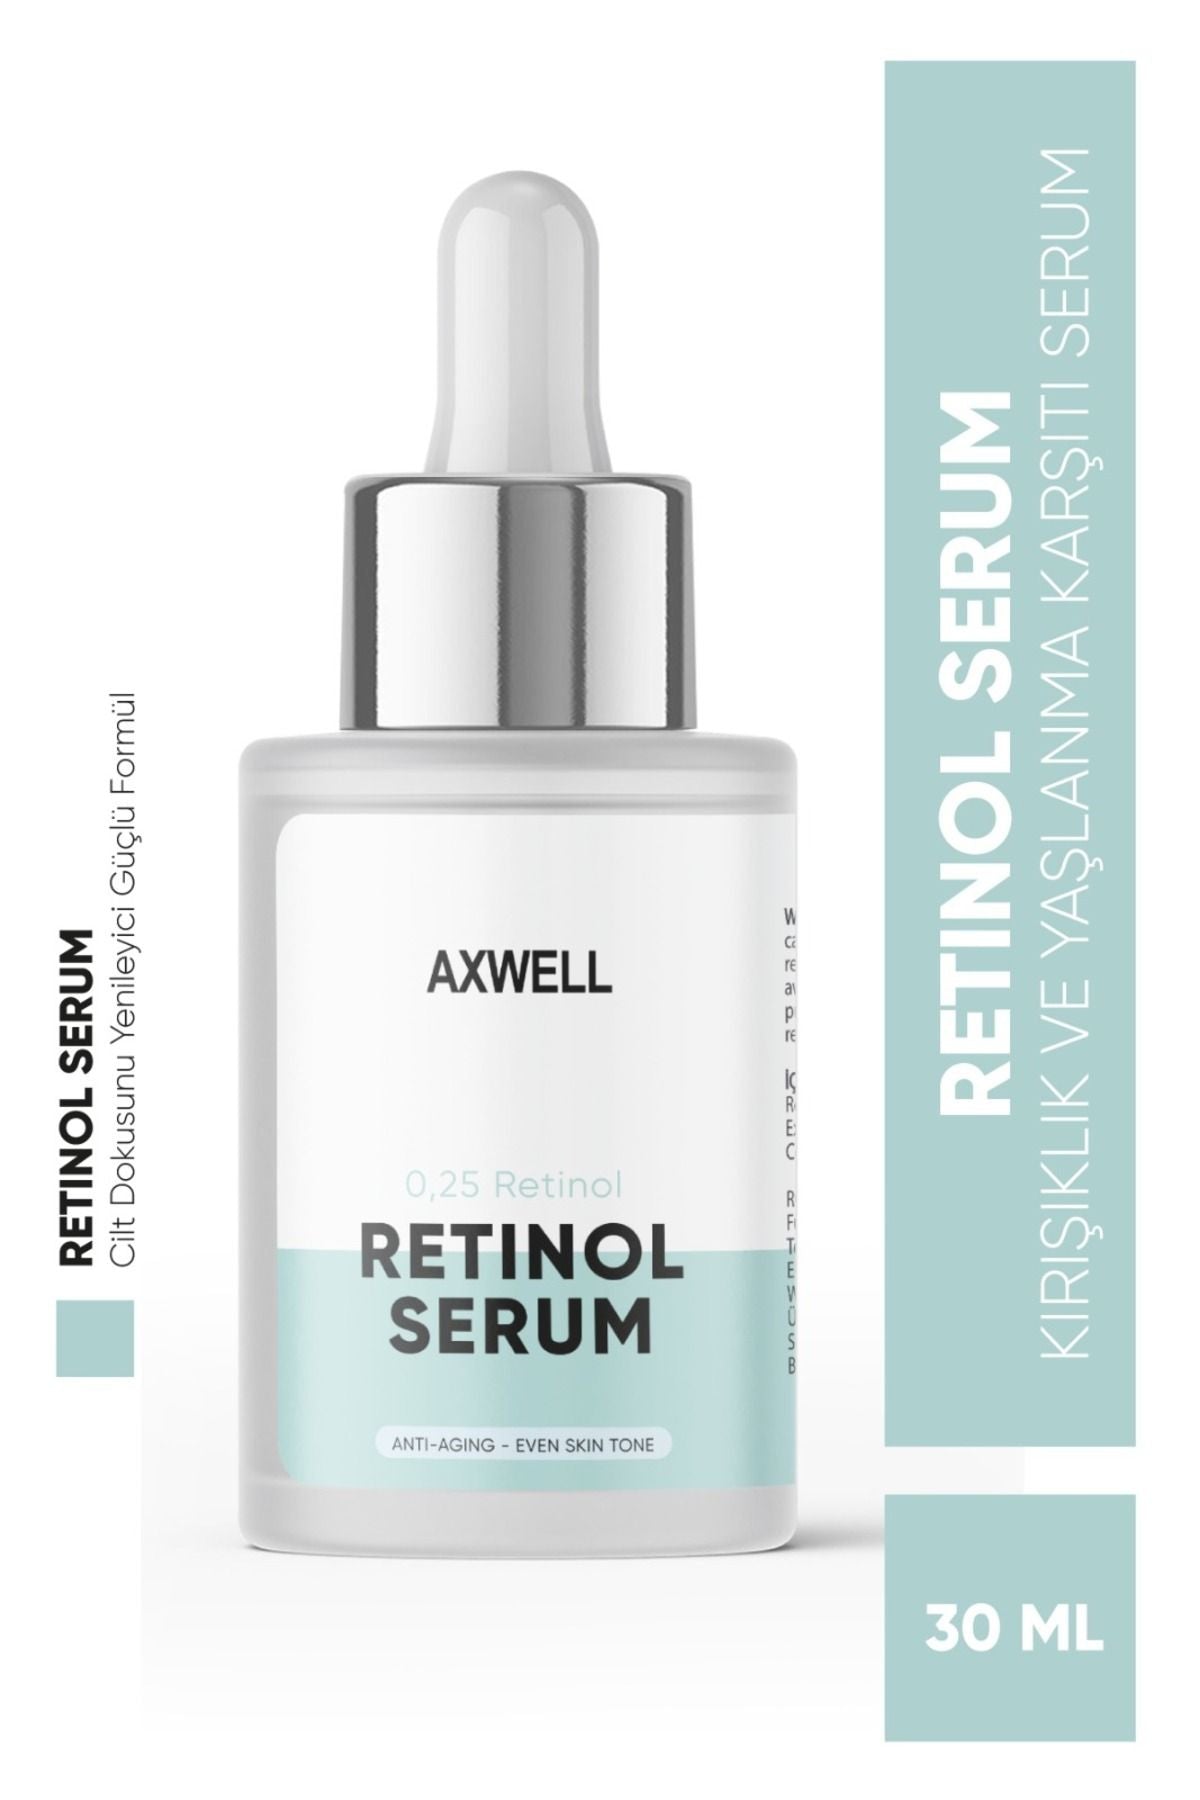 AXWELL Kırışıklık Karşıtı, Onarıcı ve Aydınlatıcı Retinol Serum 30 ML